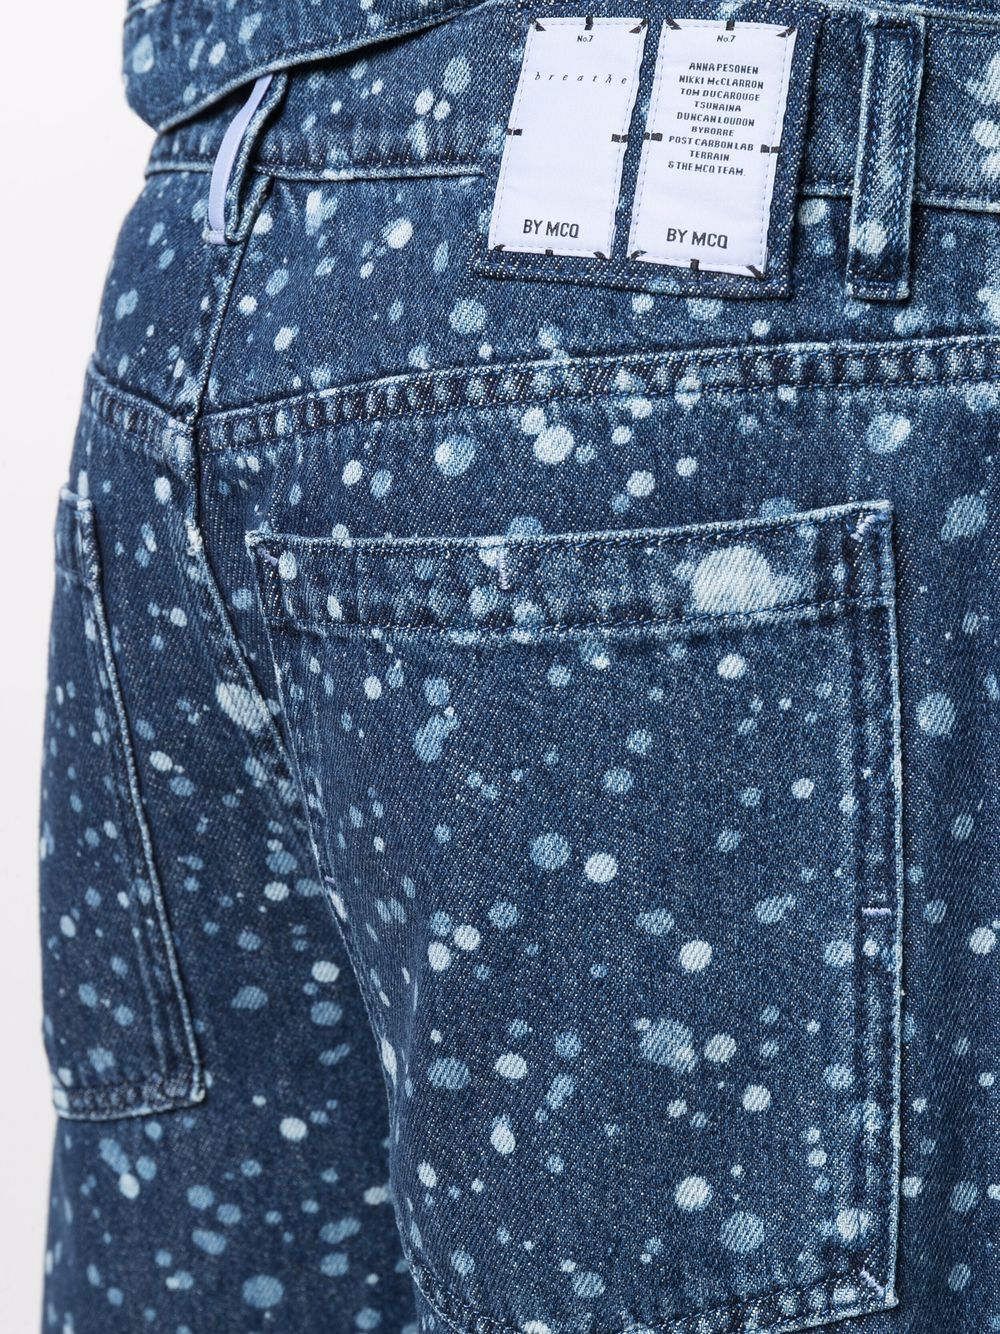 фото Mcq джинсы с эффектом разбрызганной краски